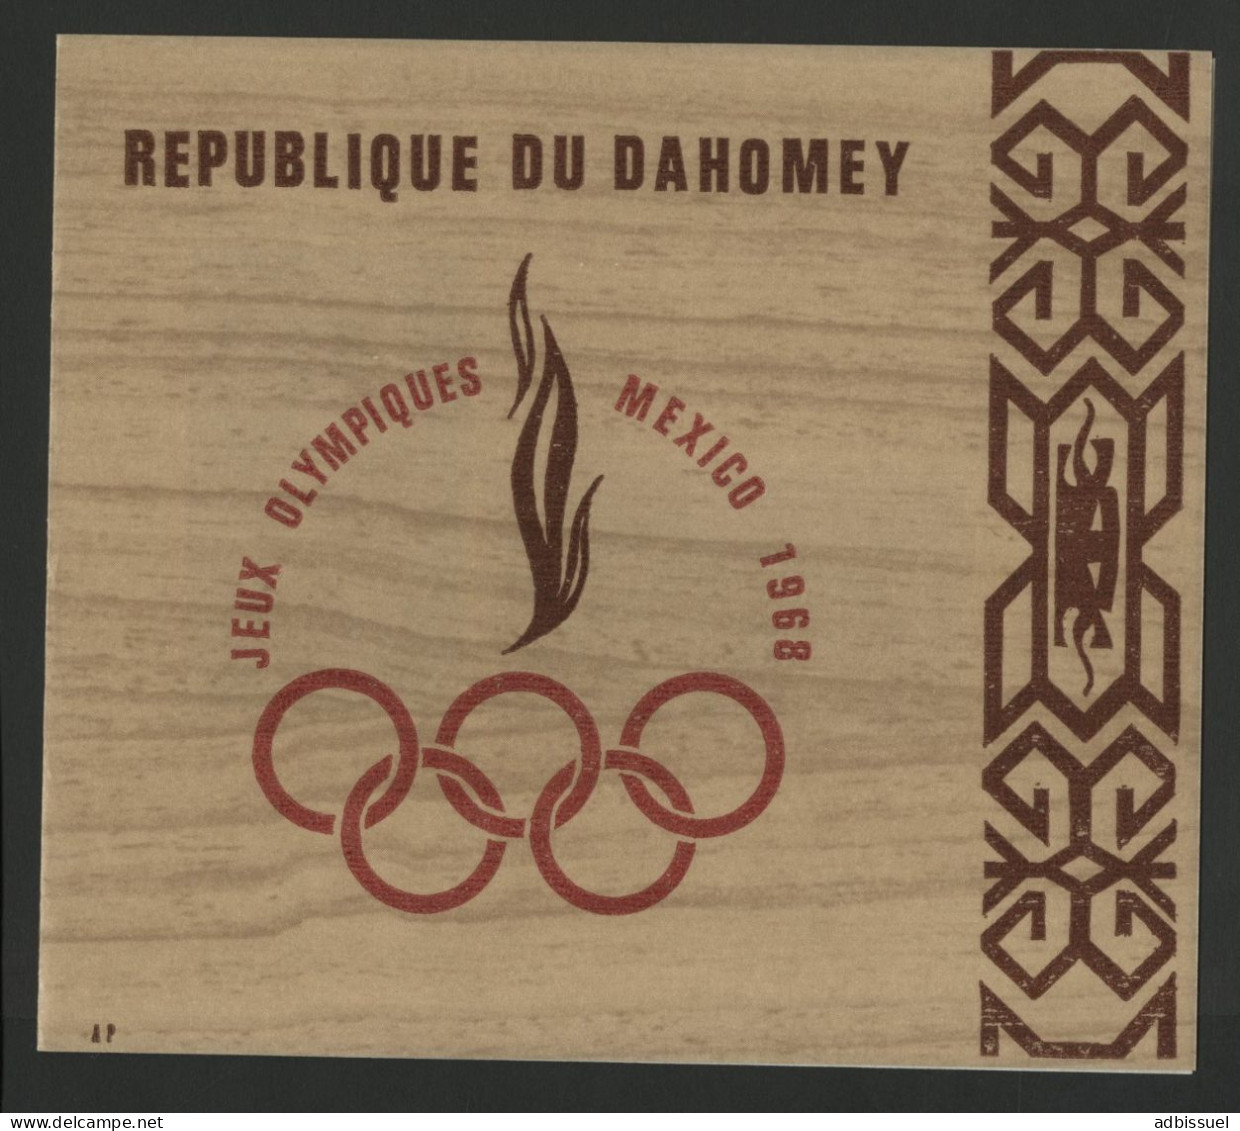 BF Bloc Feuillet N° 15 Neuf ** (MNH) Cote 10 € Jeux Olympiques De Mexico En 1968 TB - Bénin – Dahomey (1960-...)